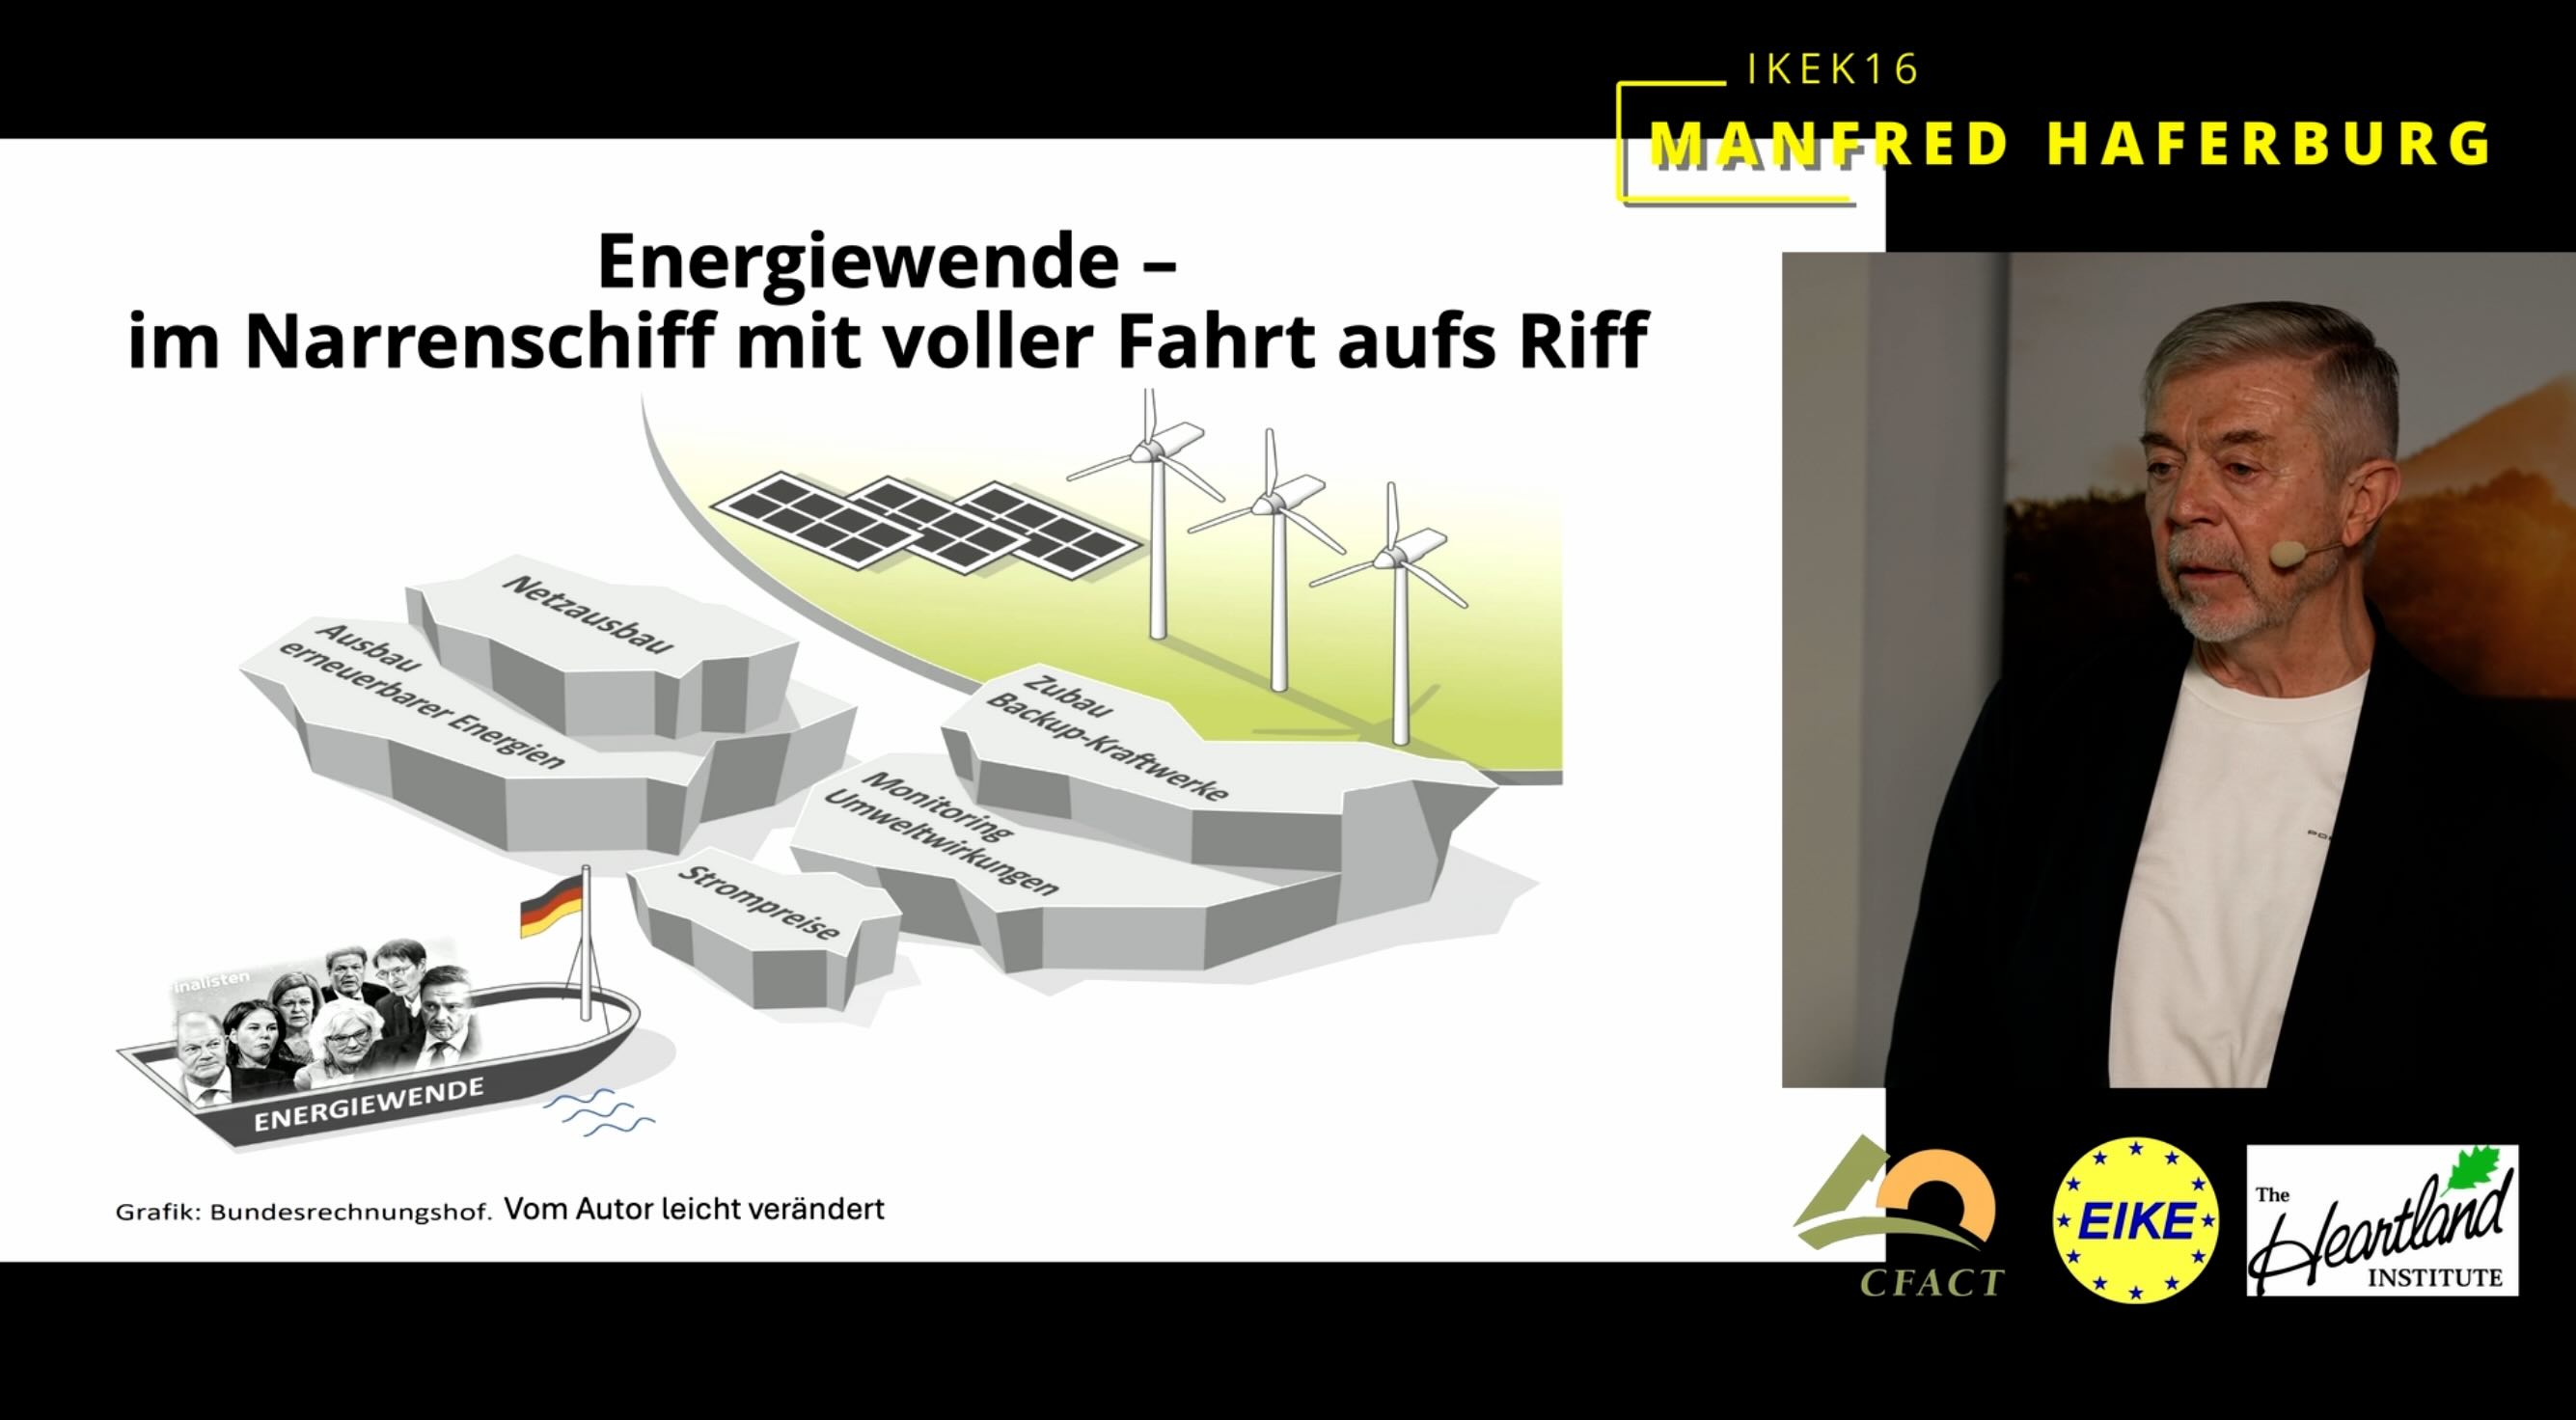 IKEK16 Manfred Haferburg – Energiewende mit voller Fahrt aufs Riff